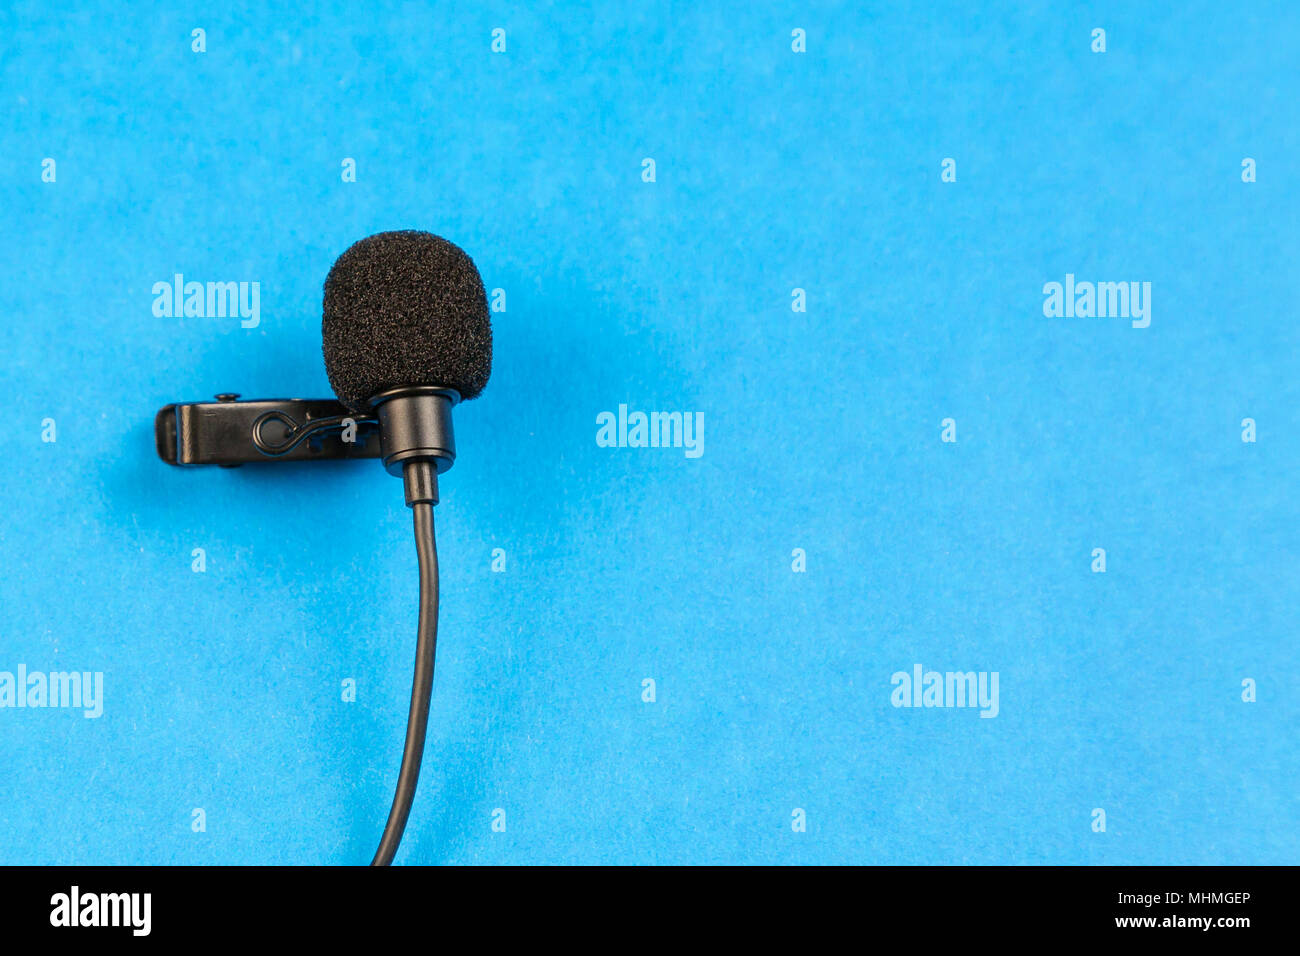 Ein kleines Mikrofon für die Aufnahme Qualität Sound auf einem blauen  Hintergrund Stockfotografie - Alamy